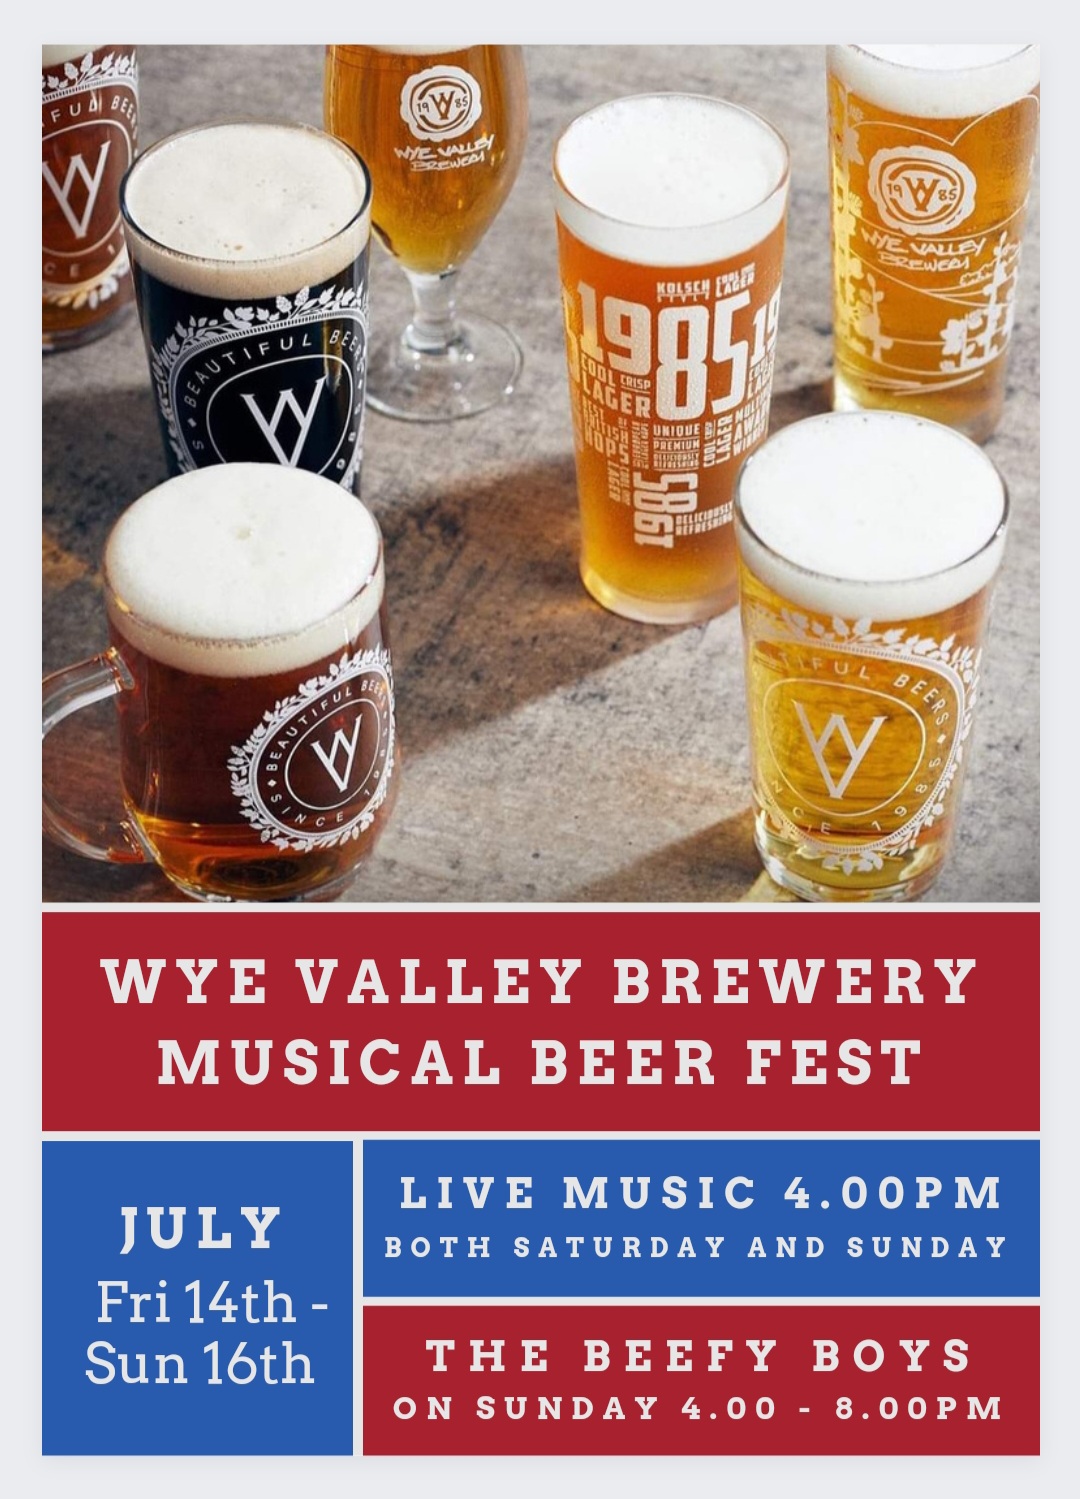 Wye Valley Summer Musical Beer Fest at The Oak Inn Staplow Ledbury, Herefordshire event poster